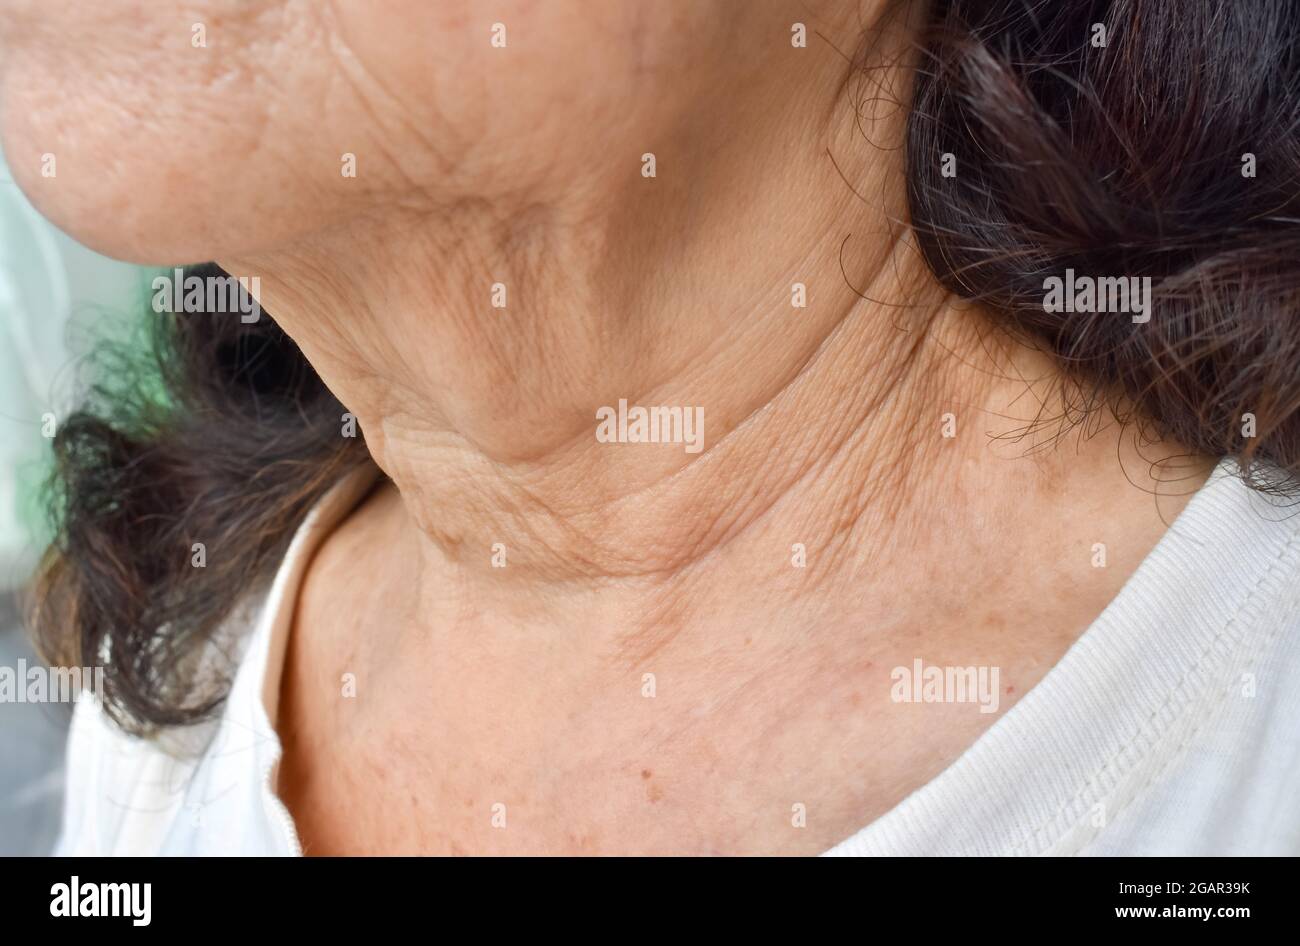 Alternde Hautfalten oder Hautfalten oder Falten am Hals südostasiatischer, älterer chinesischer Frau. Stockfoto